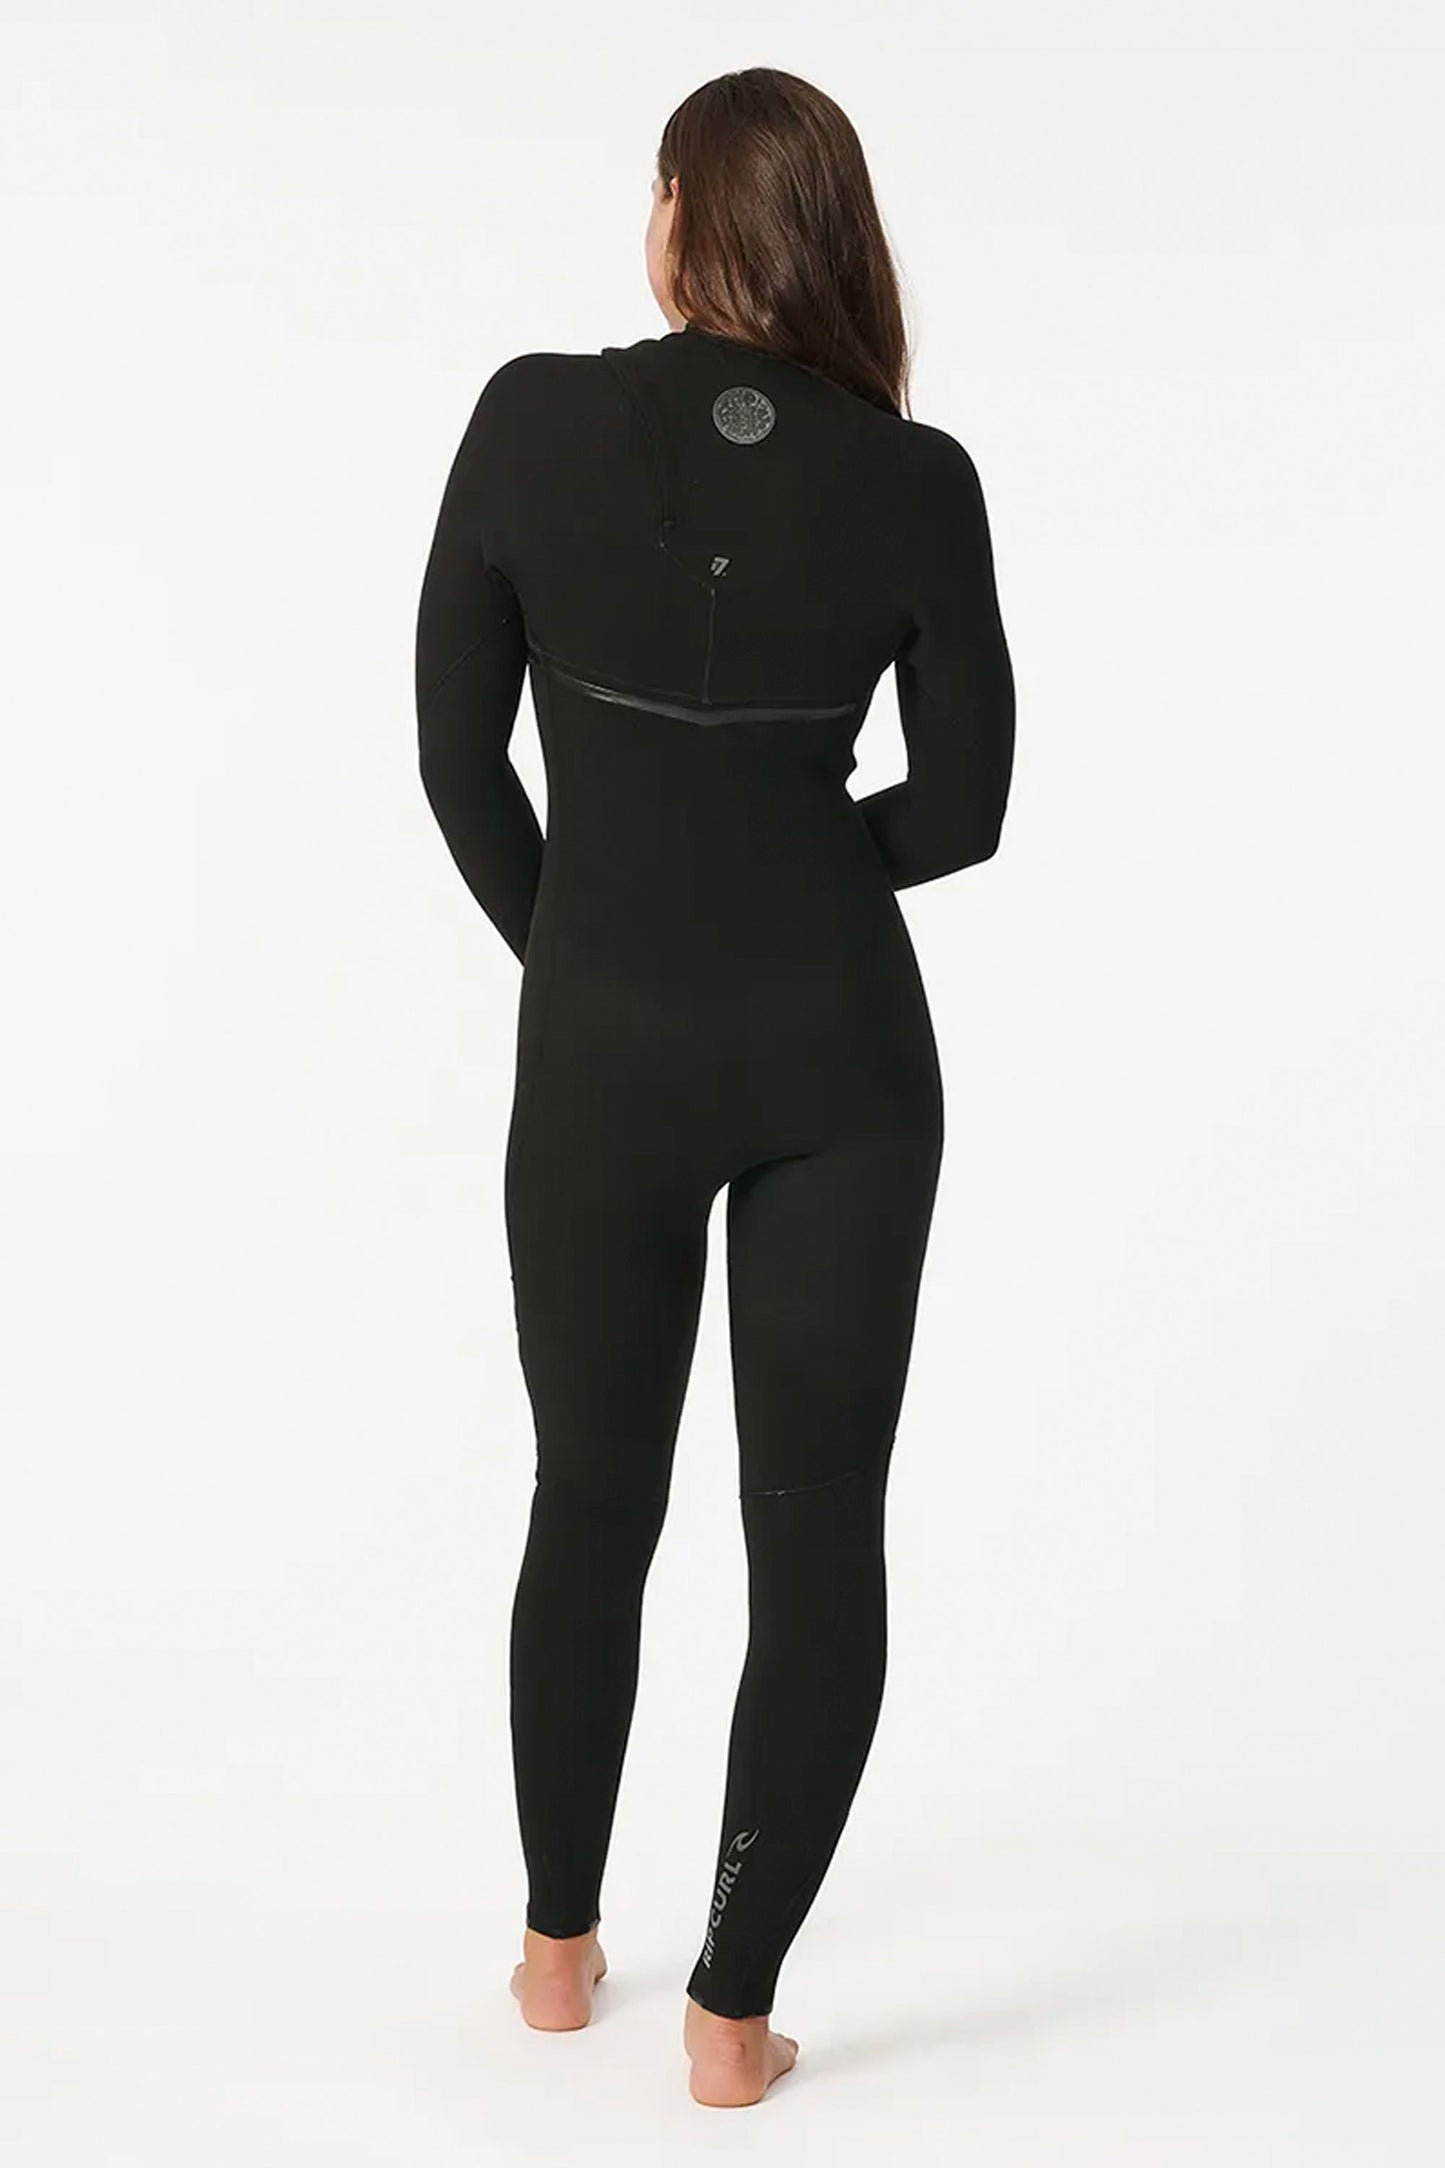 Pukas-Surf-Shop-rip-curl-wetsuit-E-bomb-5-3mm-zip-free-black